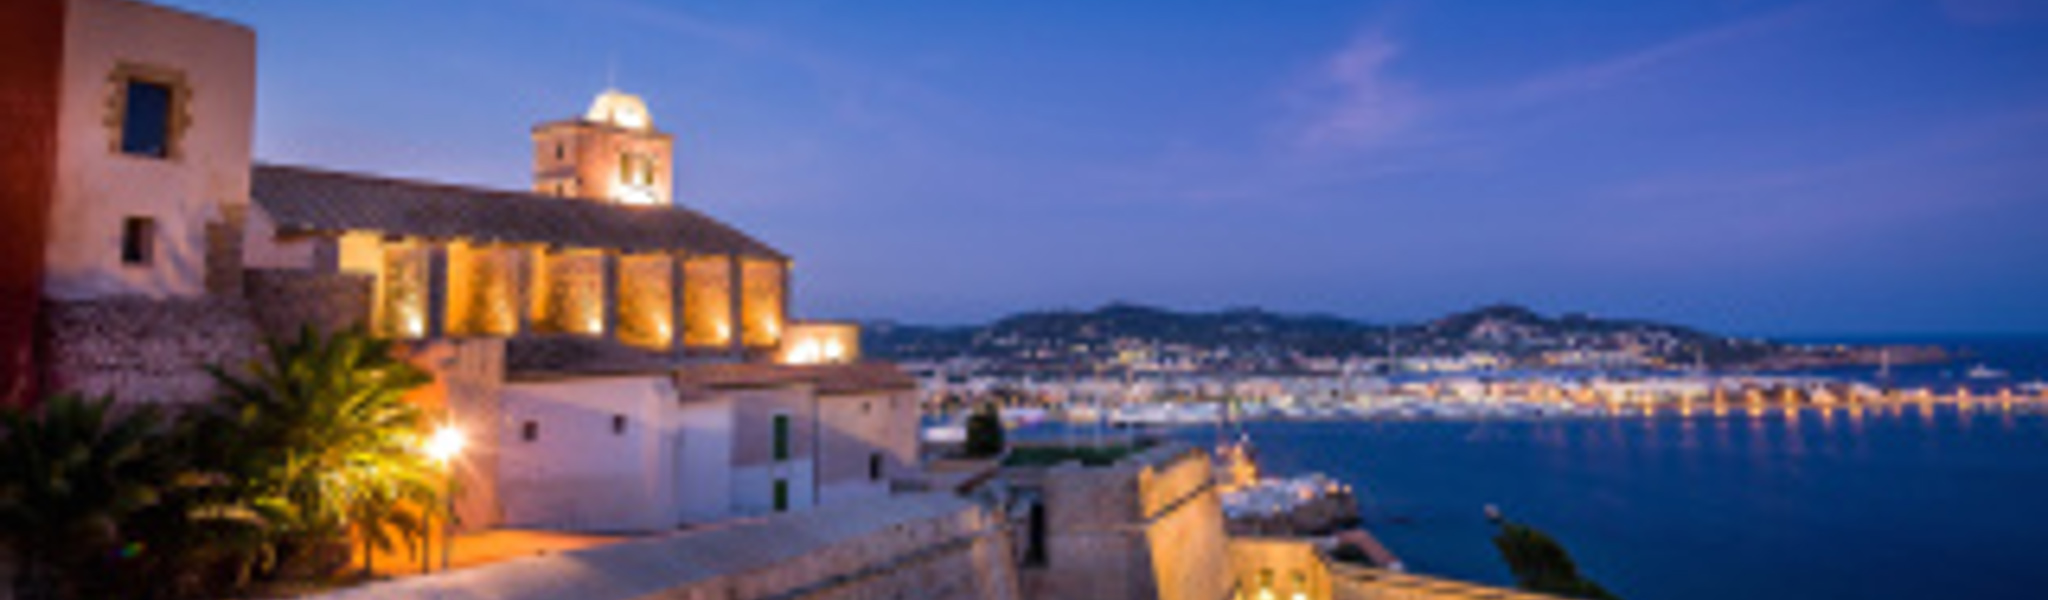 10 redenen waarom we van Ibiza houden 